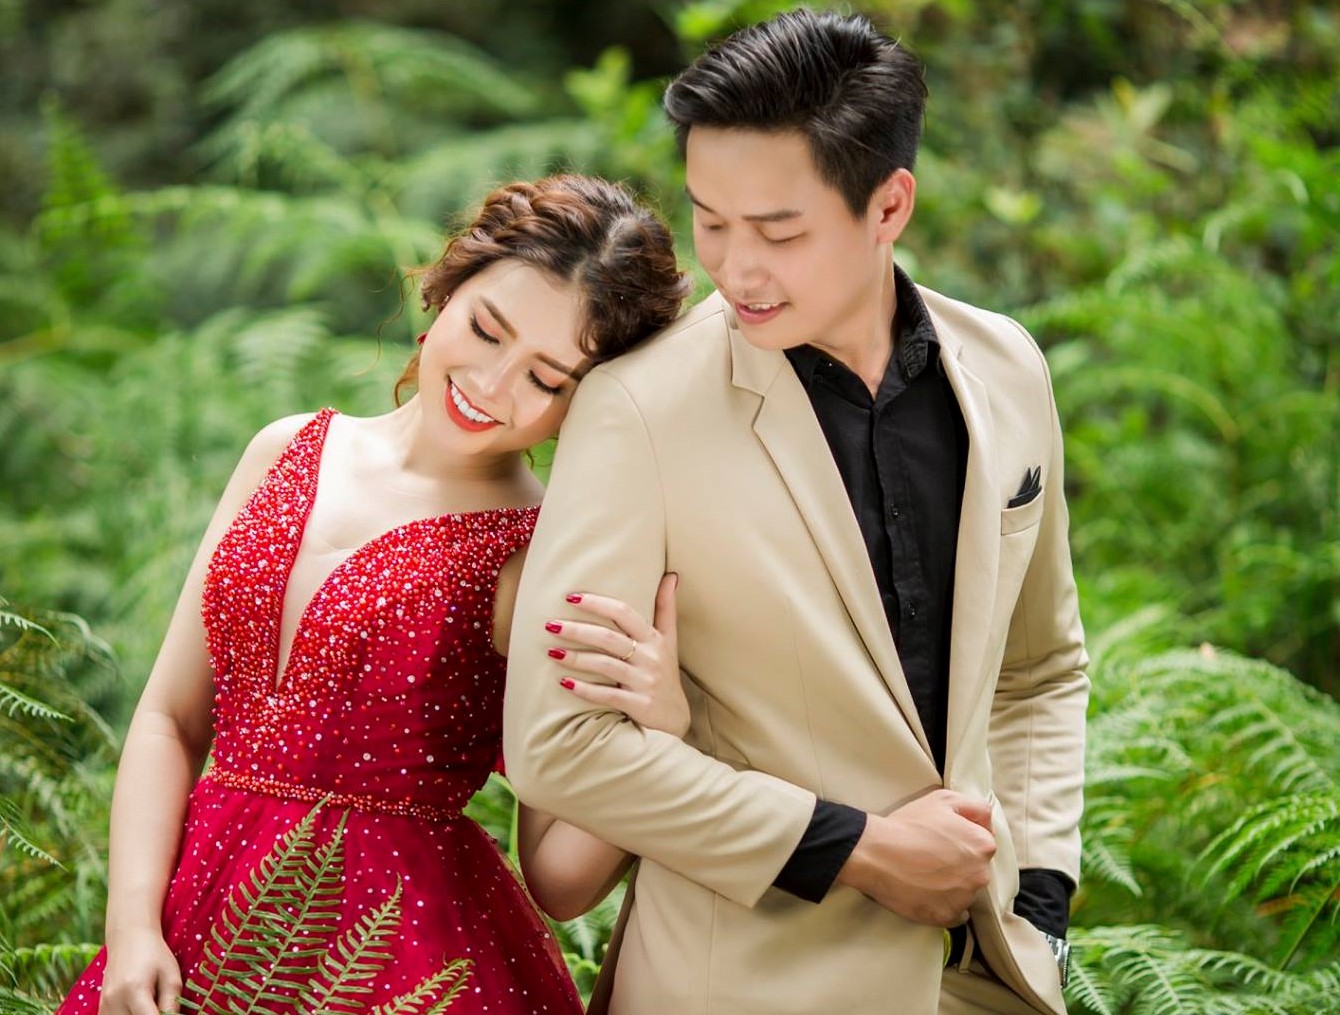 Áo cưới dạ hội 20  May áo cưới đẹp giá rẻ ở TPHCM  Hồng Thắng